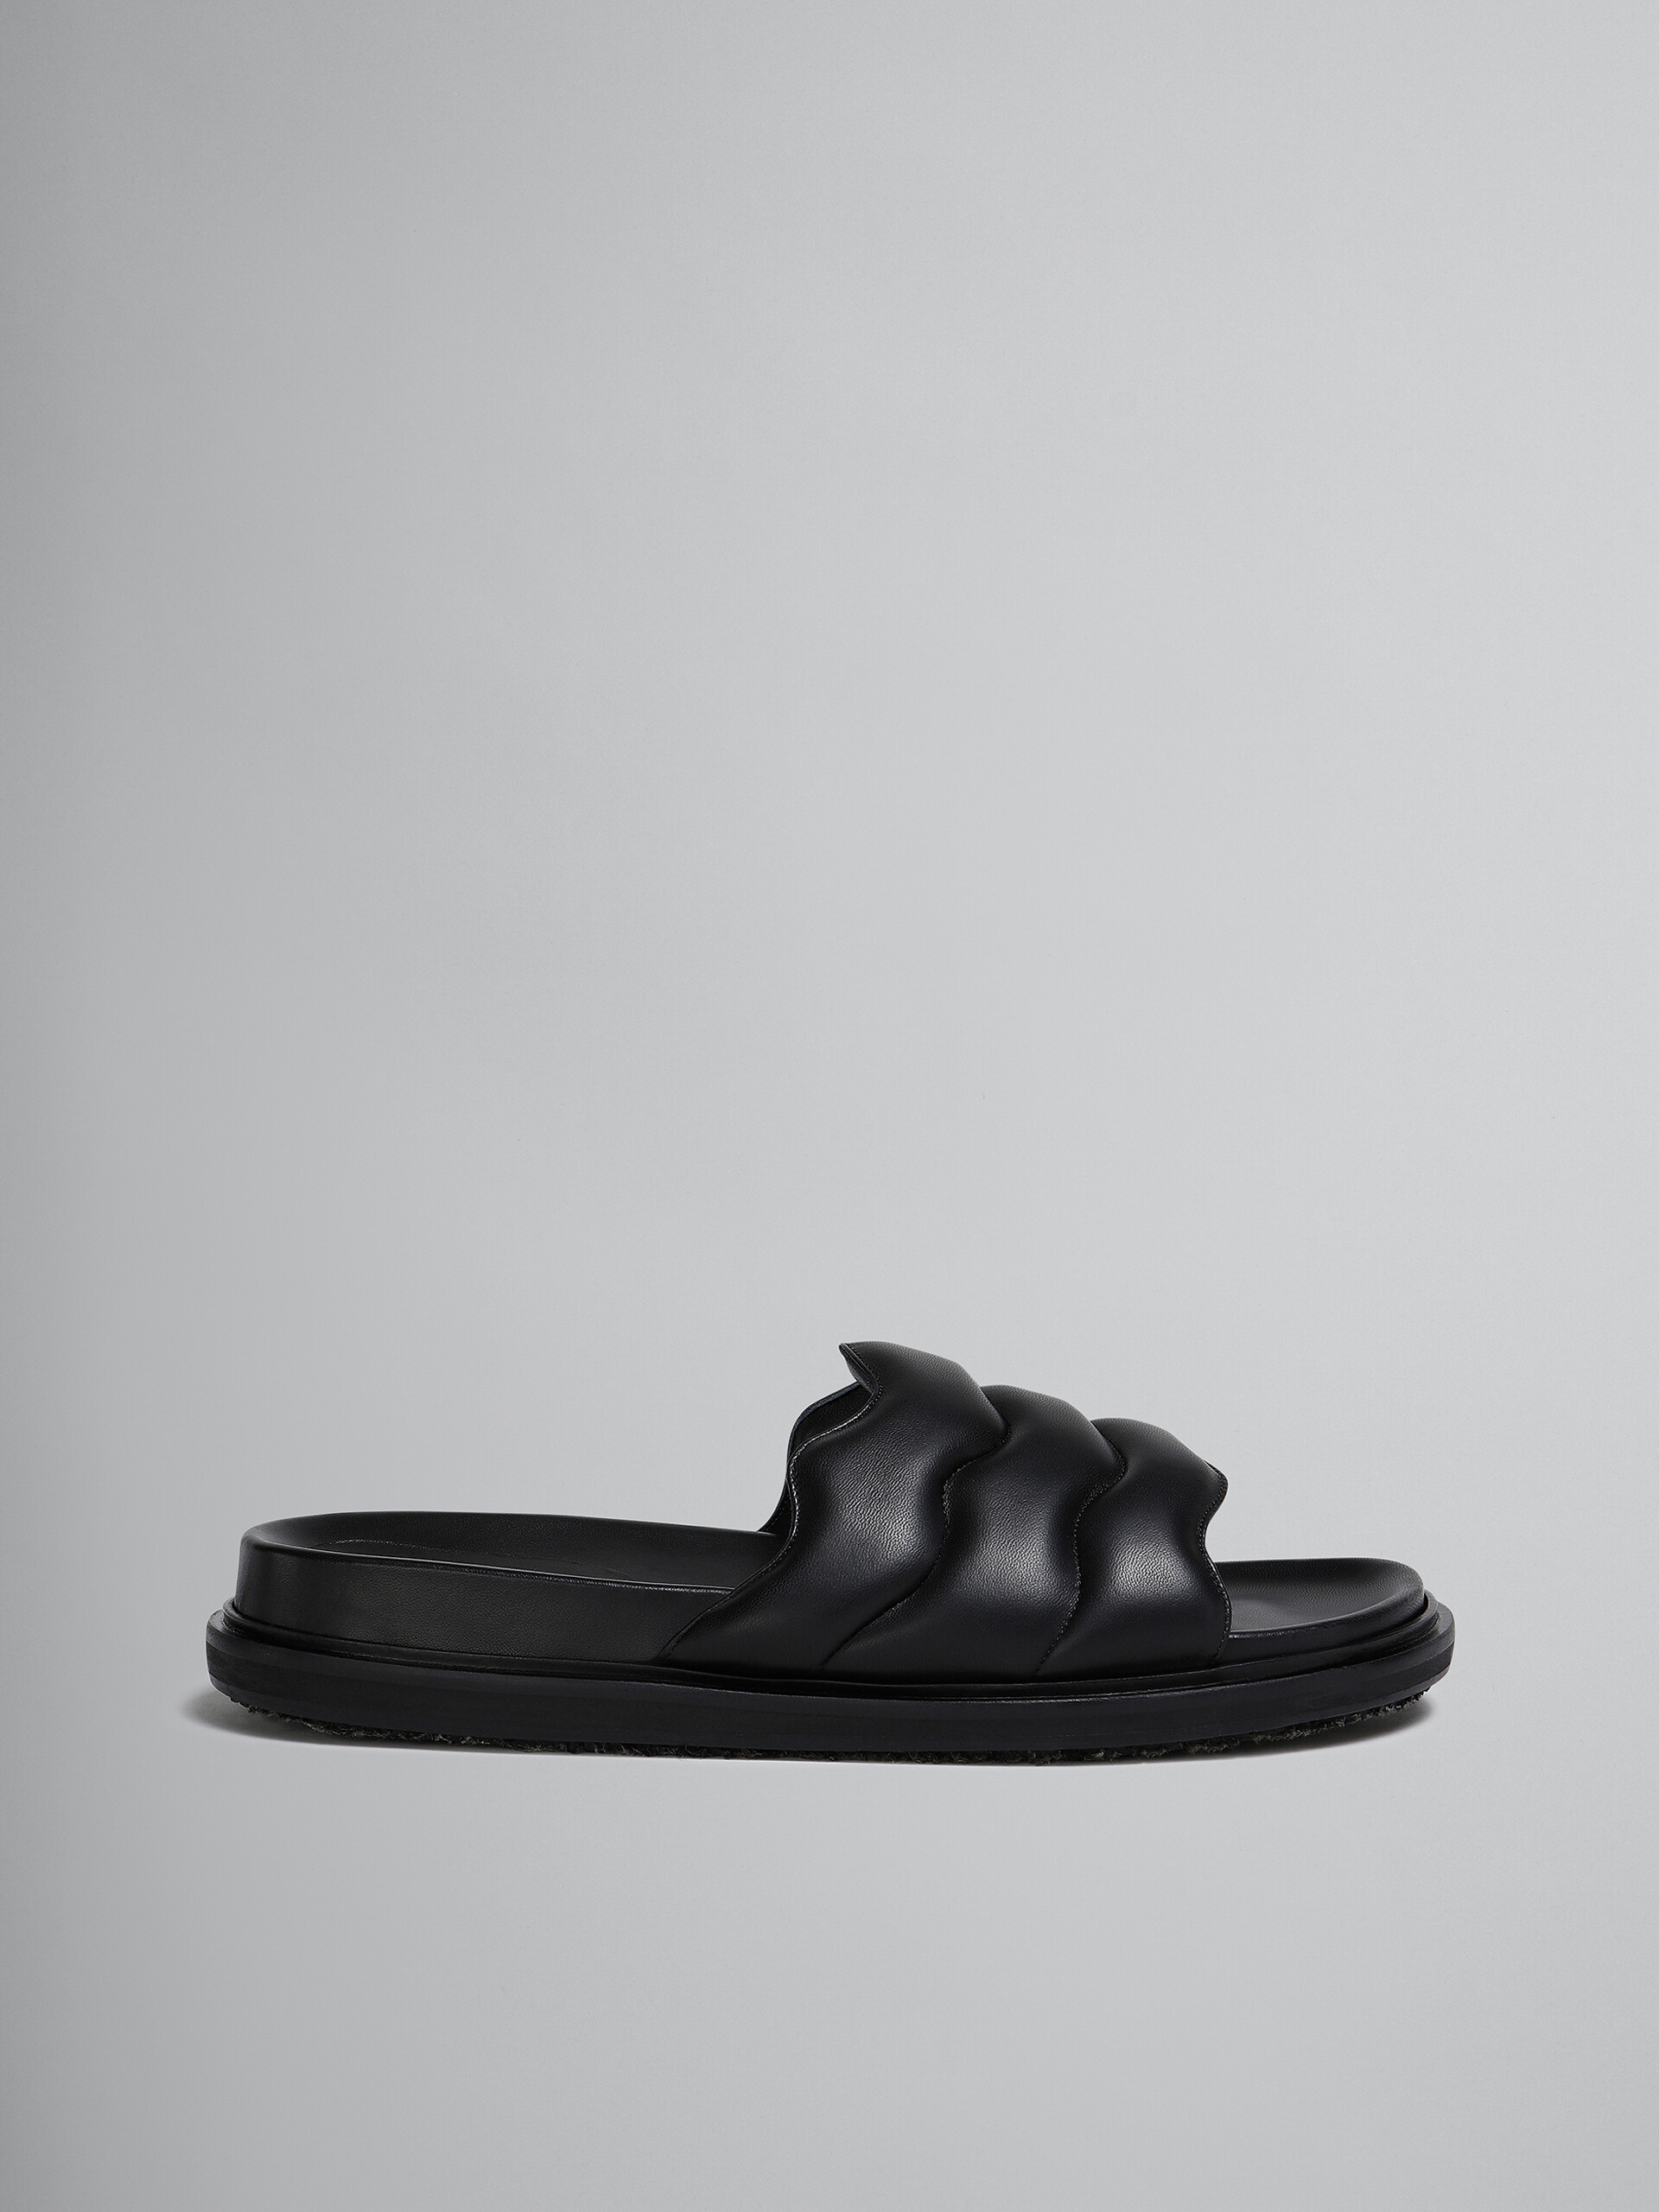 Black wavy leather slide sandal - Sandals - Image 1